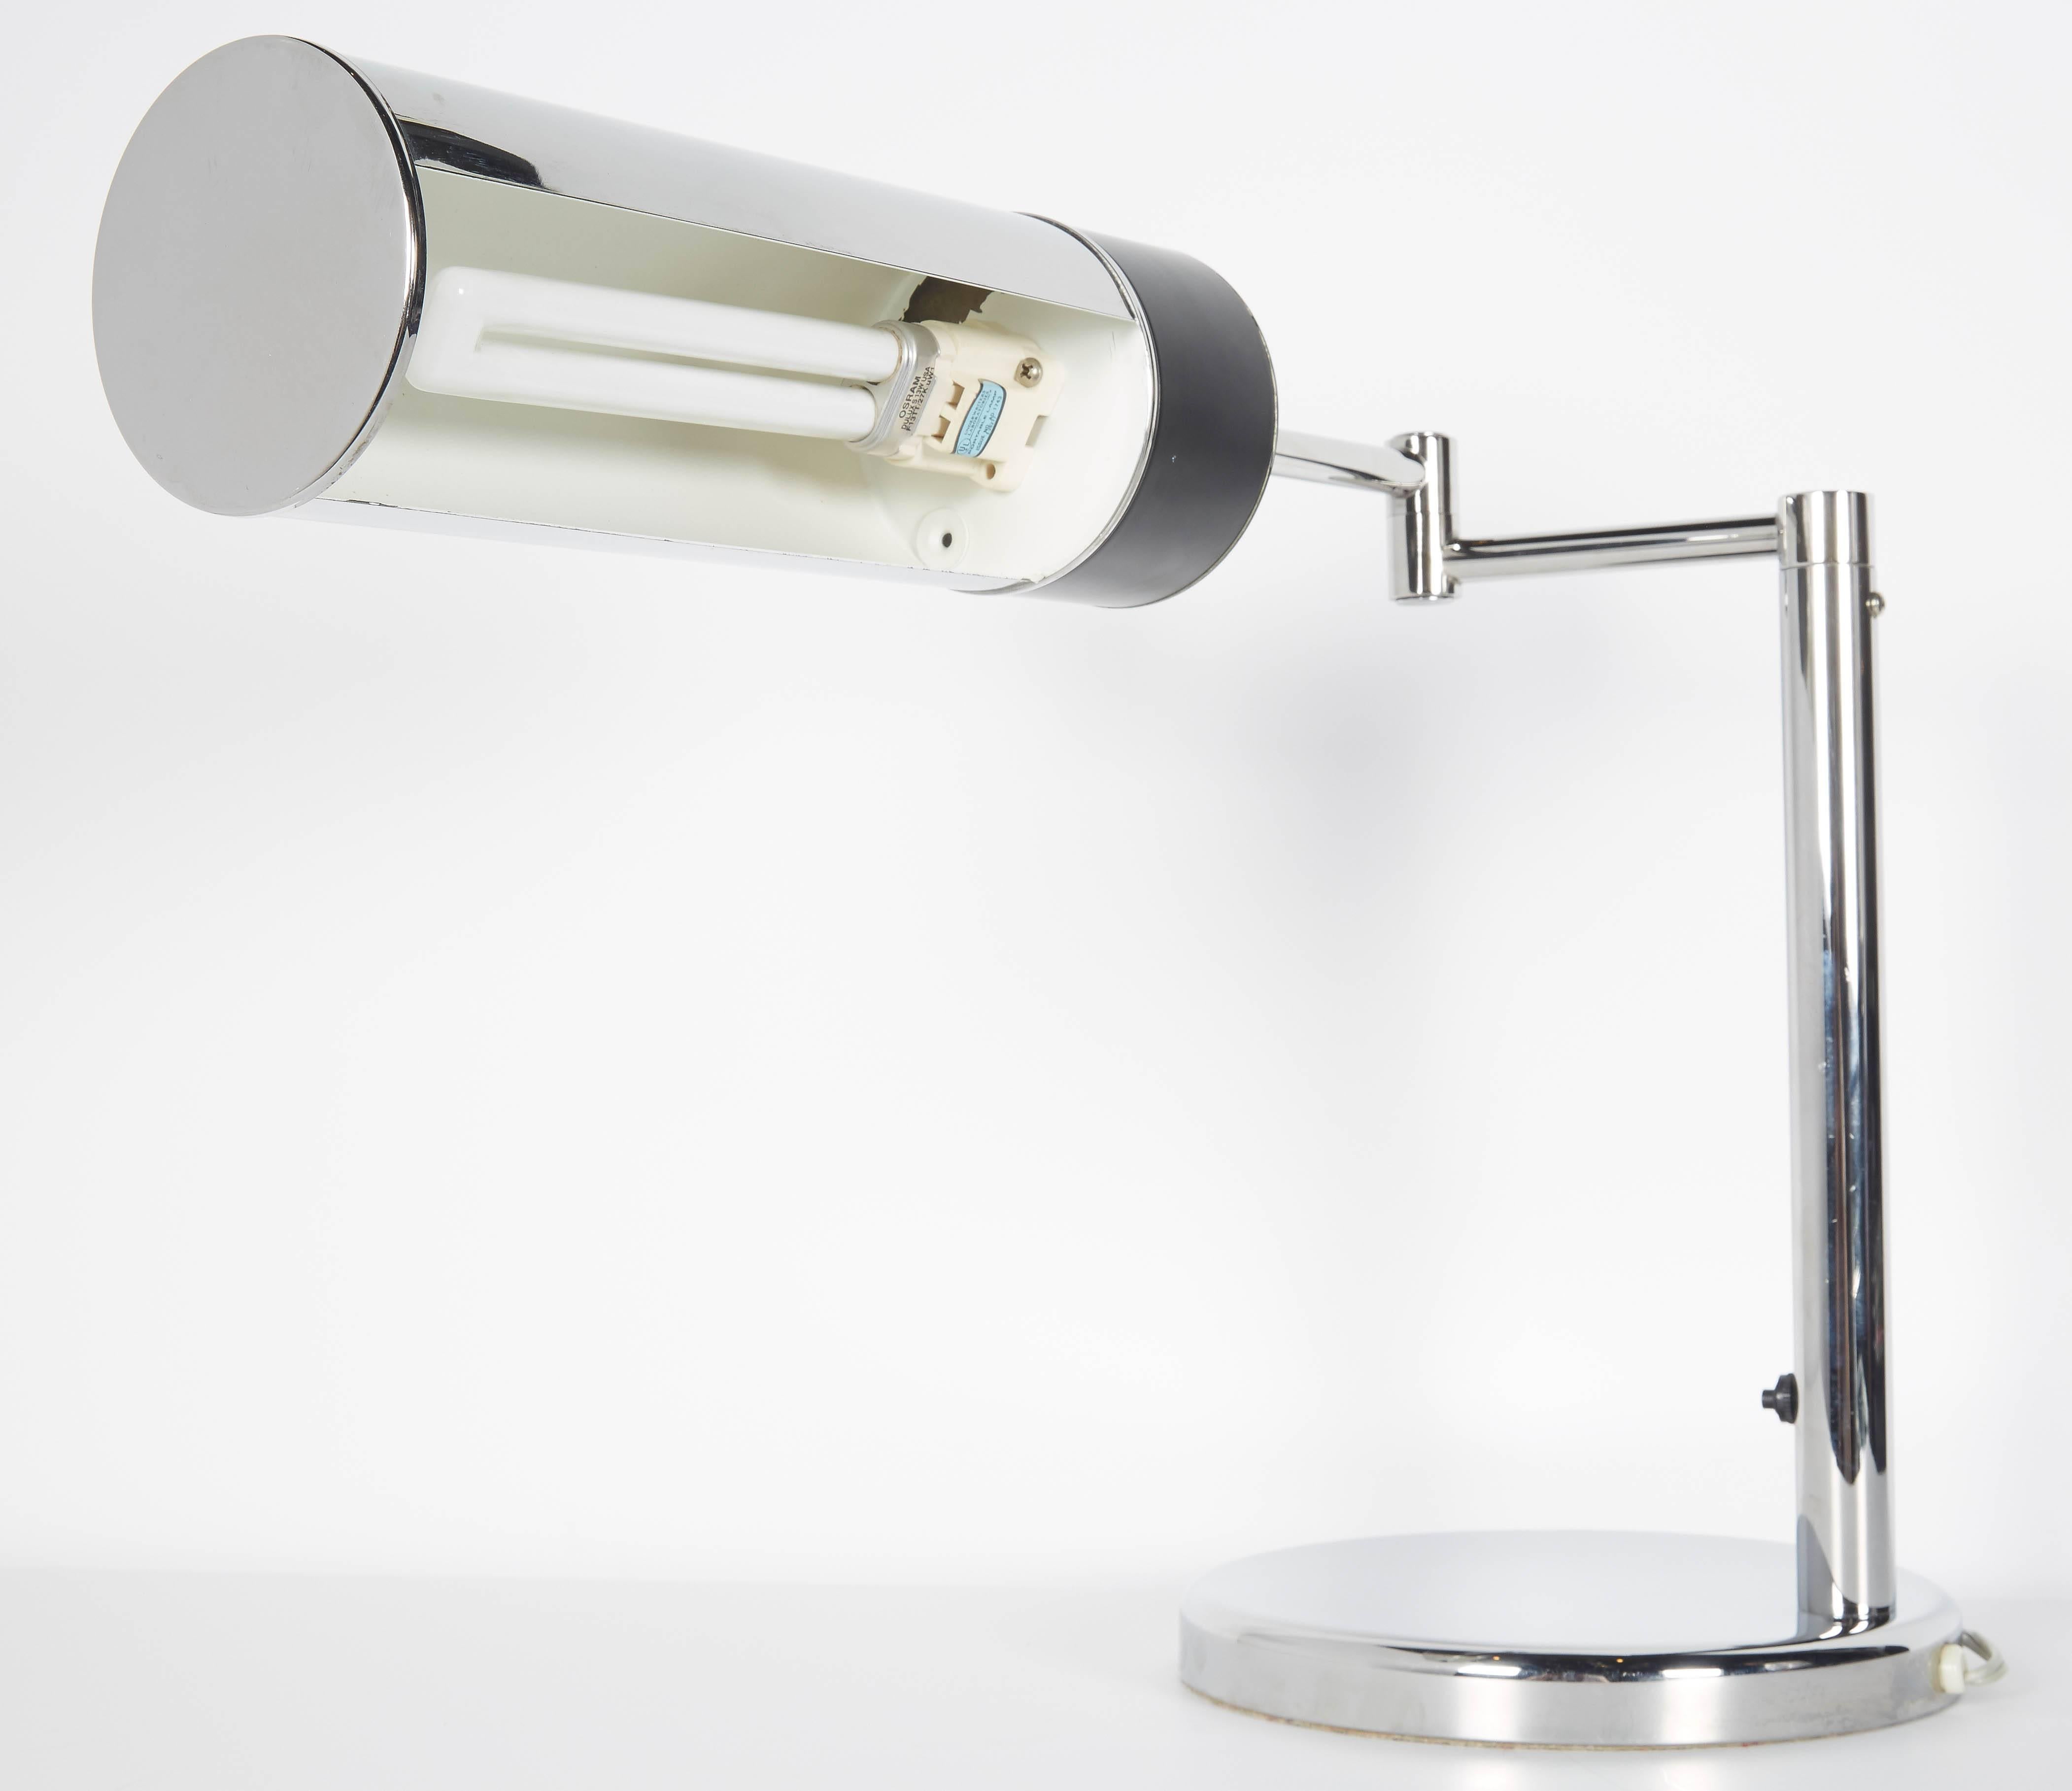 Metal Mid-Century Modern Chrome Desk Lamp with Swing Arm by Walter Von Nessen, 1960s